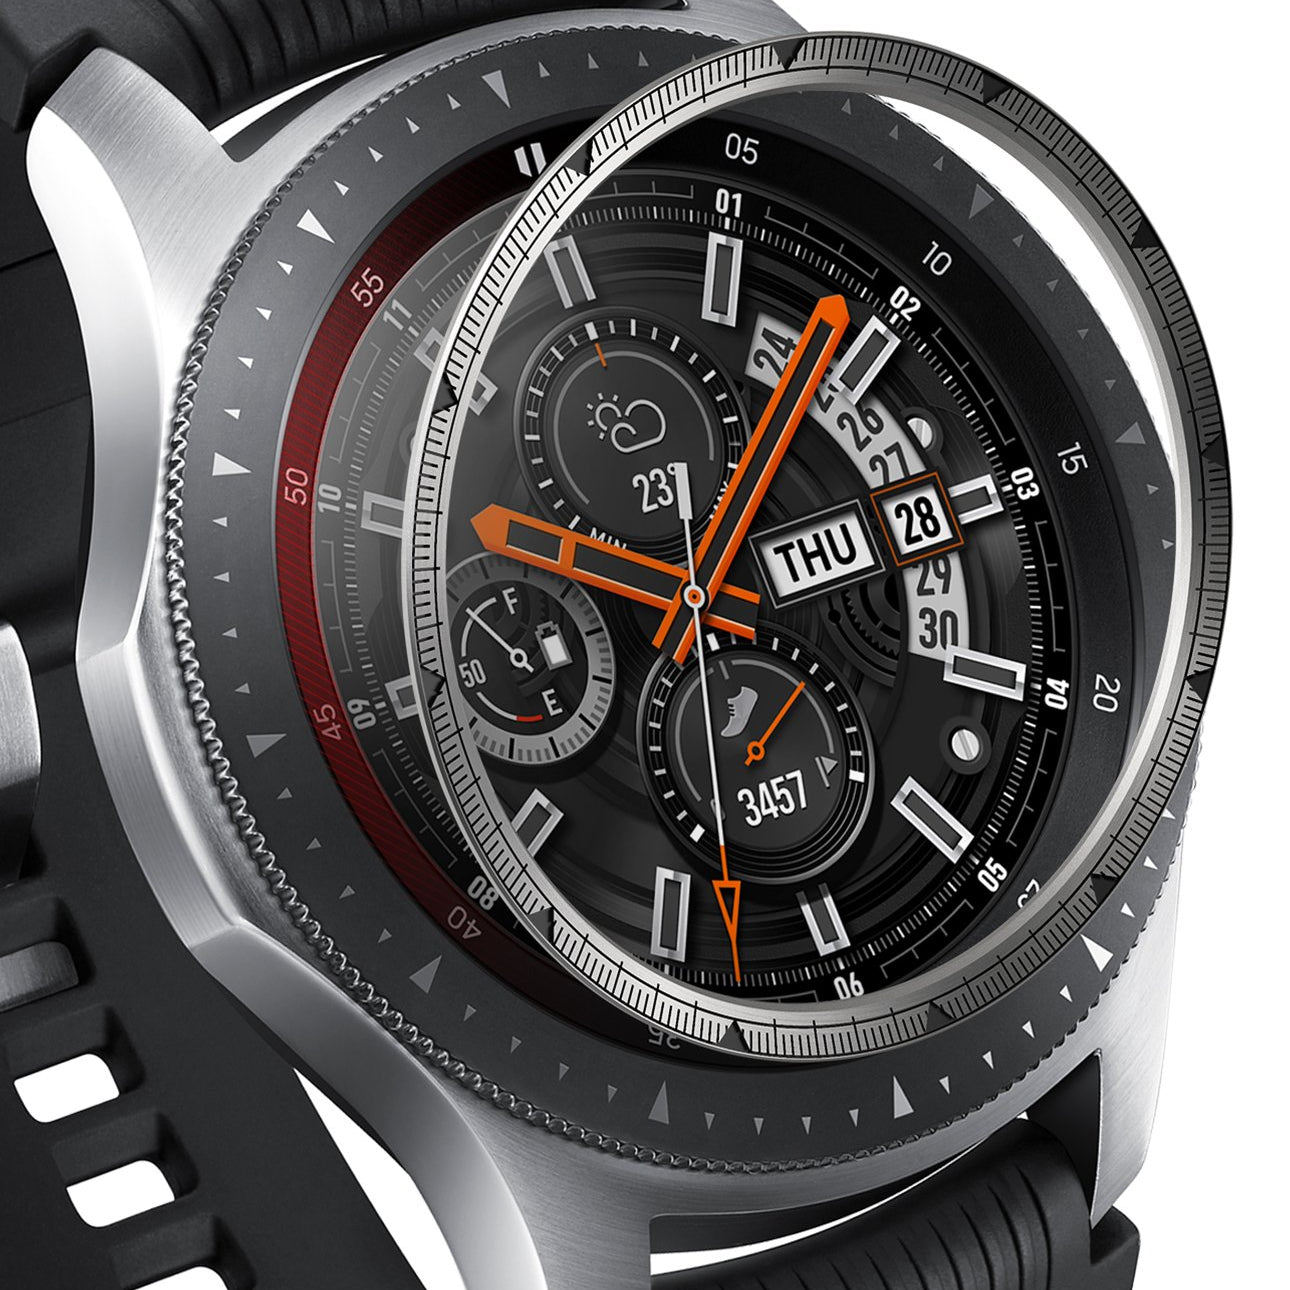 Ringke Inner Bezel Styling for Galaxy Watch 46mm, Gear S3 Frontier, Classic, GW-46-IN-01